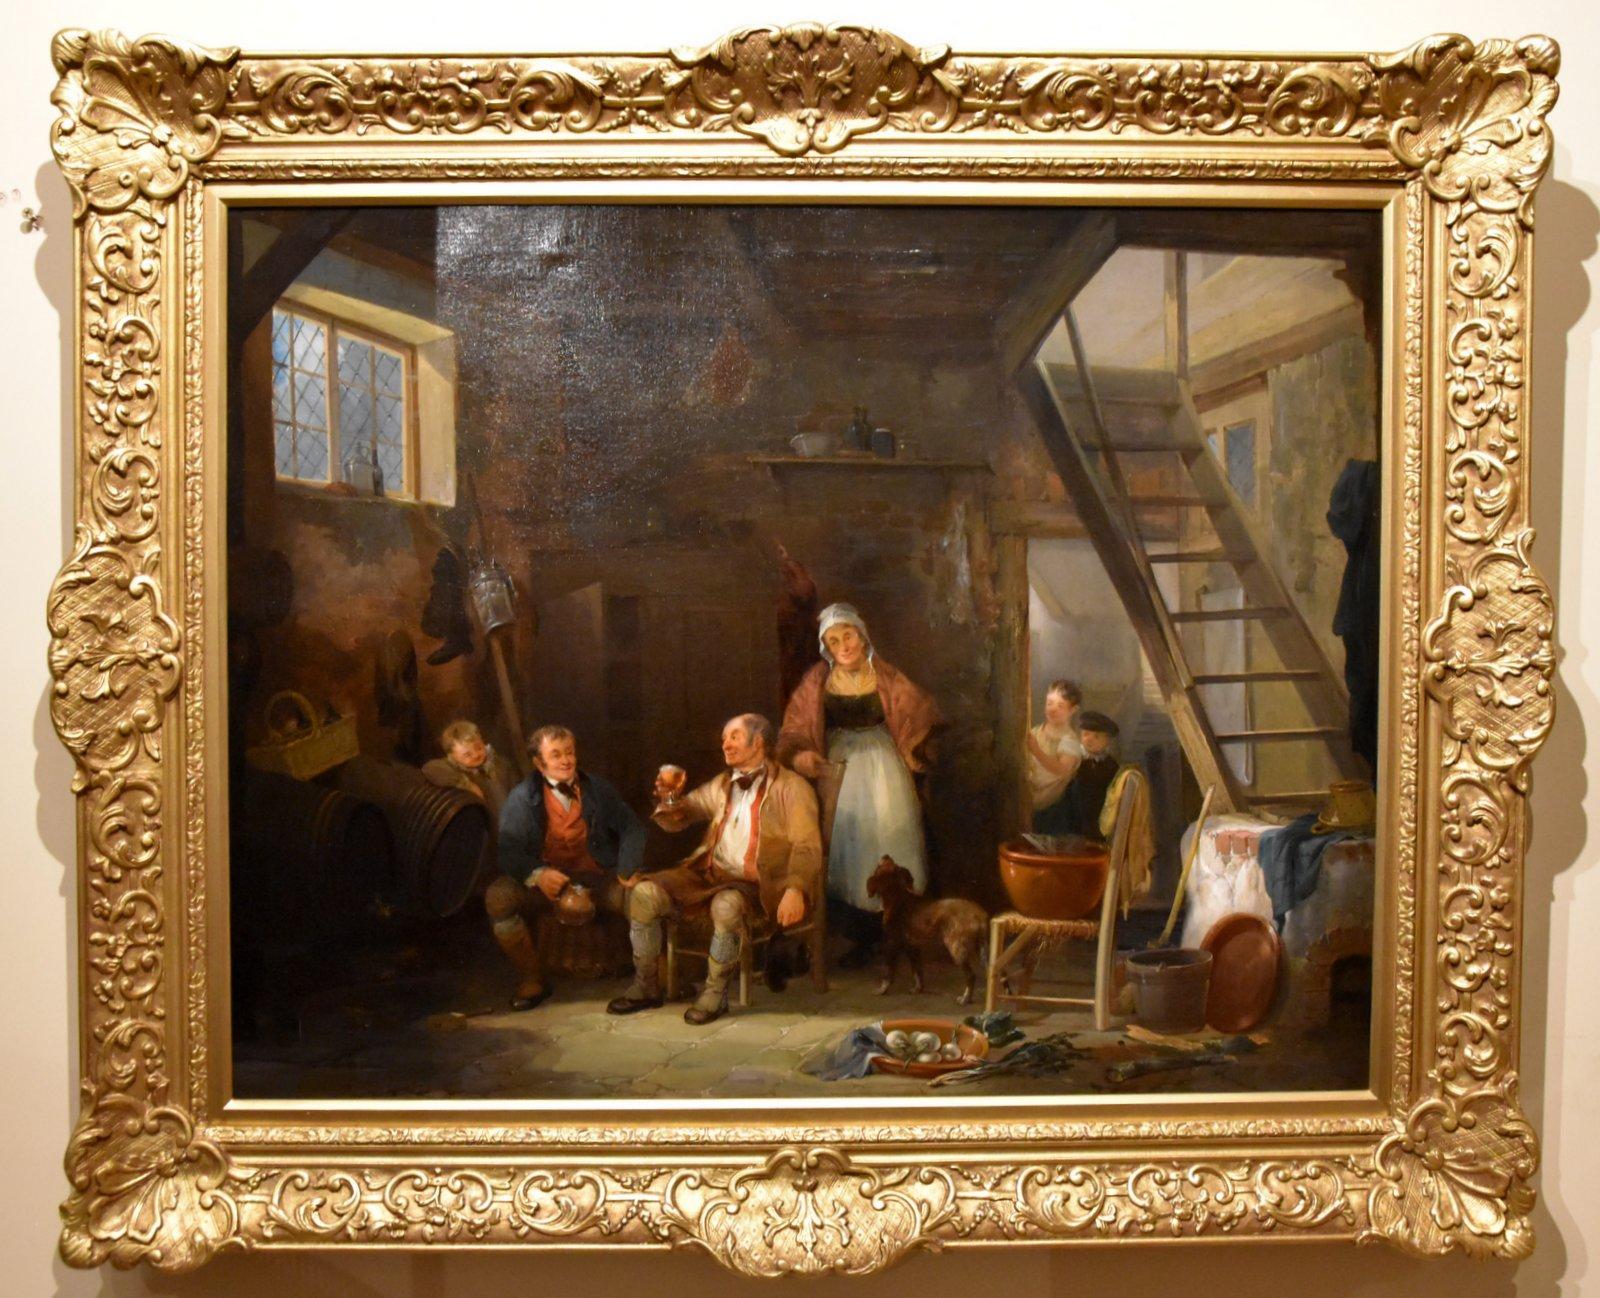 William Shayer Senior Interior Painting - Oil Painting by William Shayer Snr "An Inn Interior"